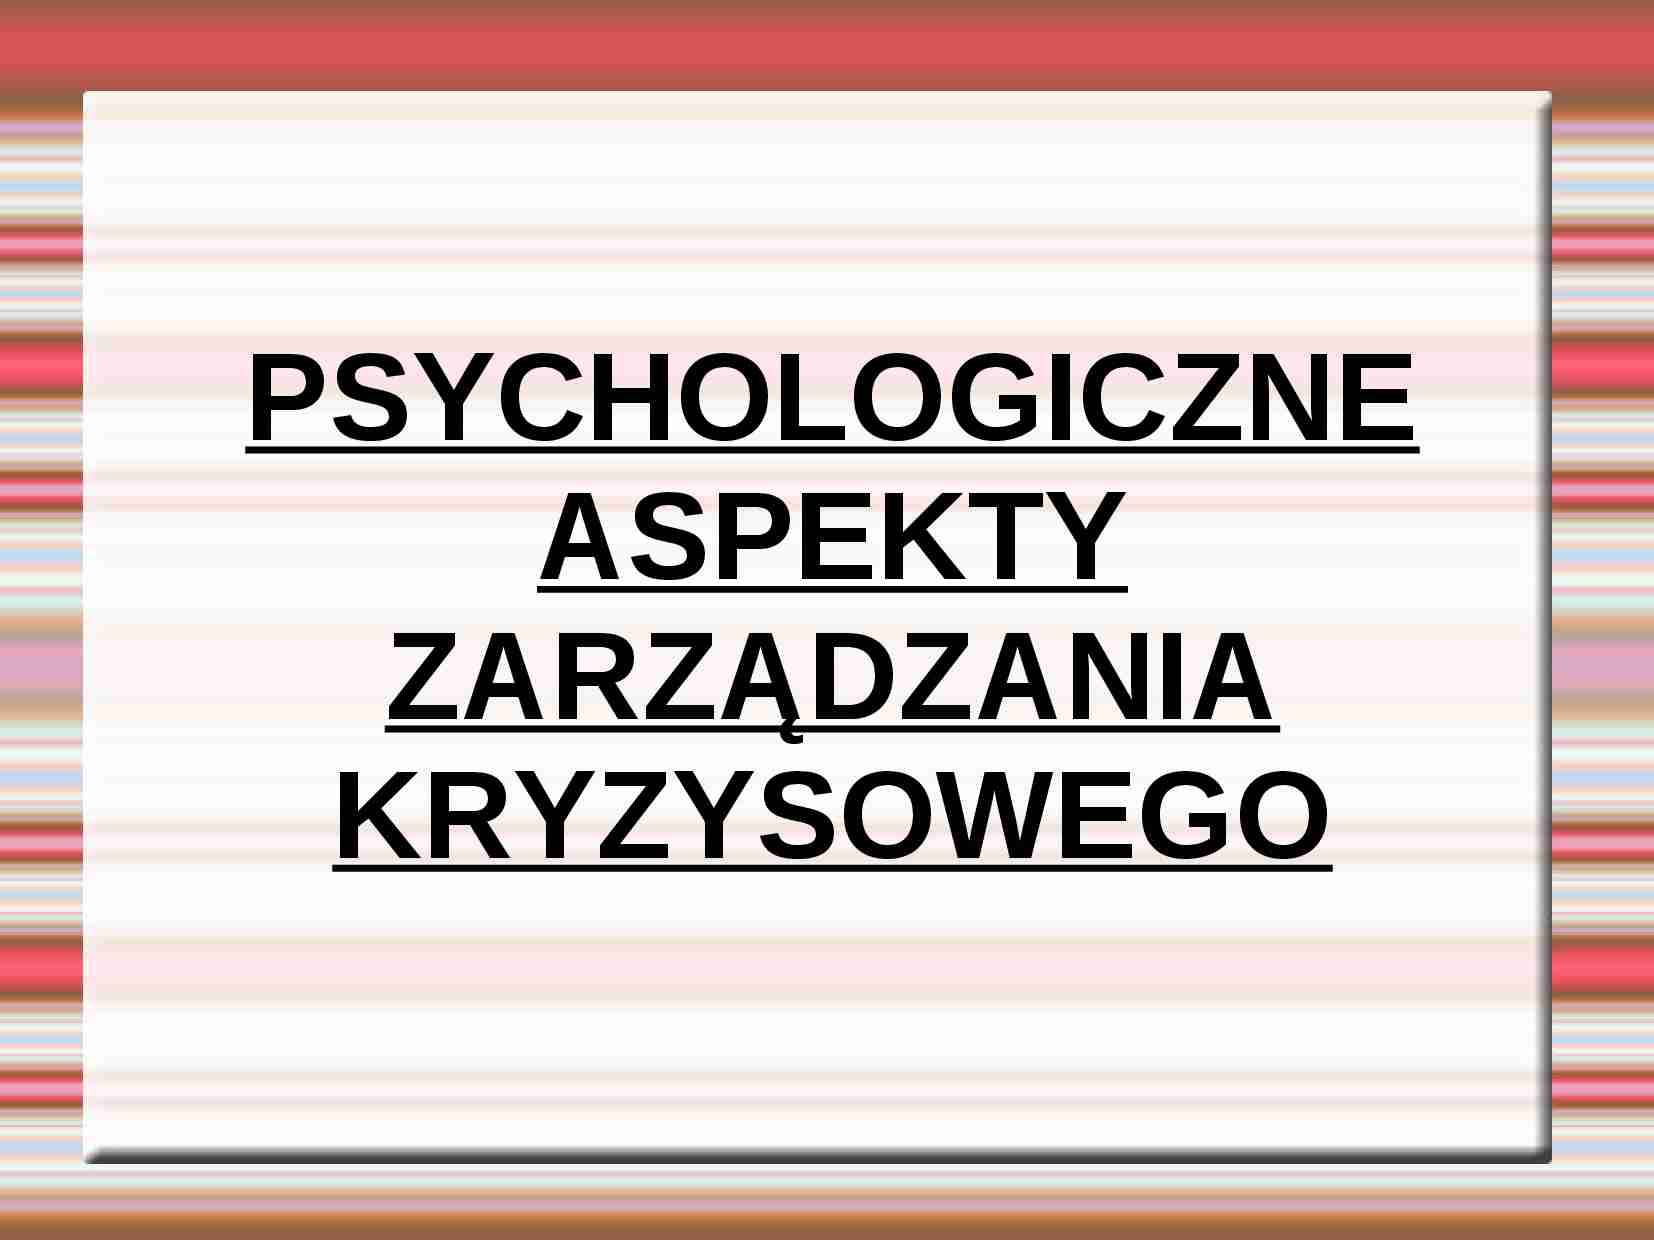 Psychologiczne aspekty zarządzania kryzysowego - strona 1